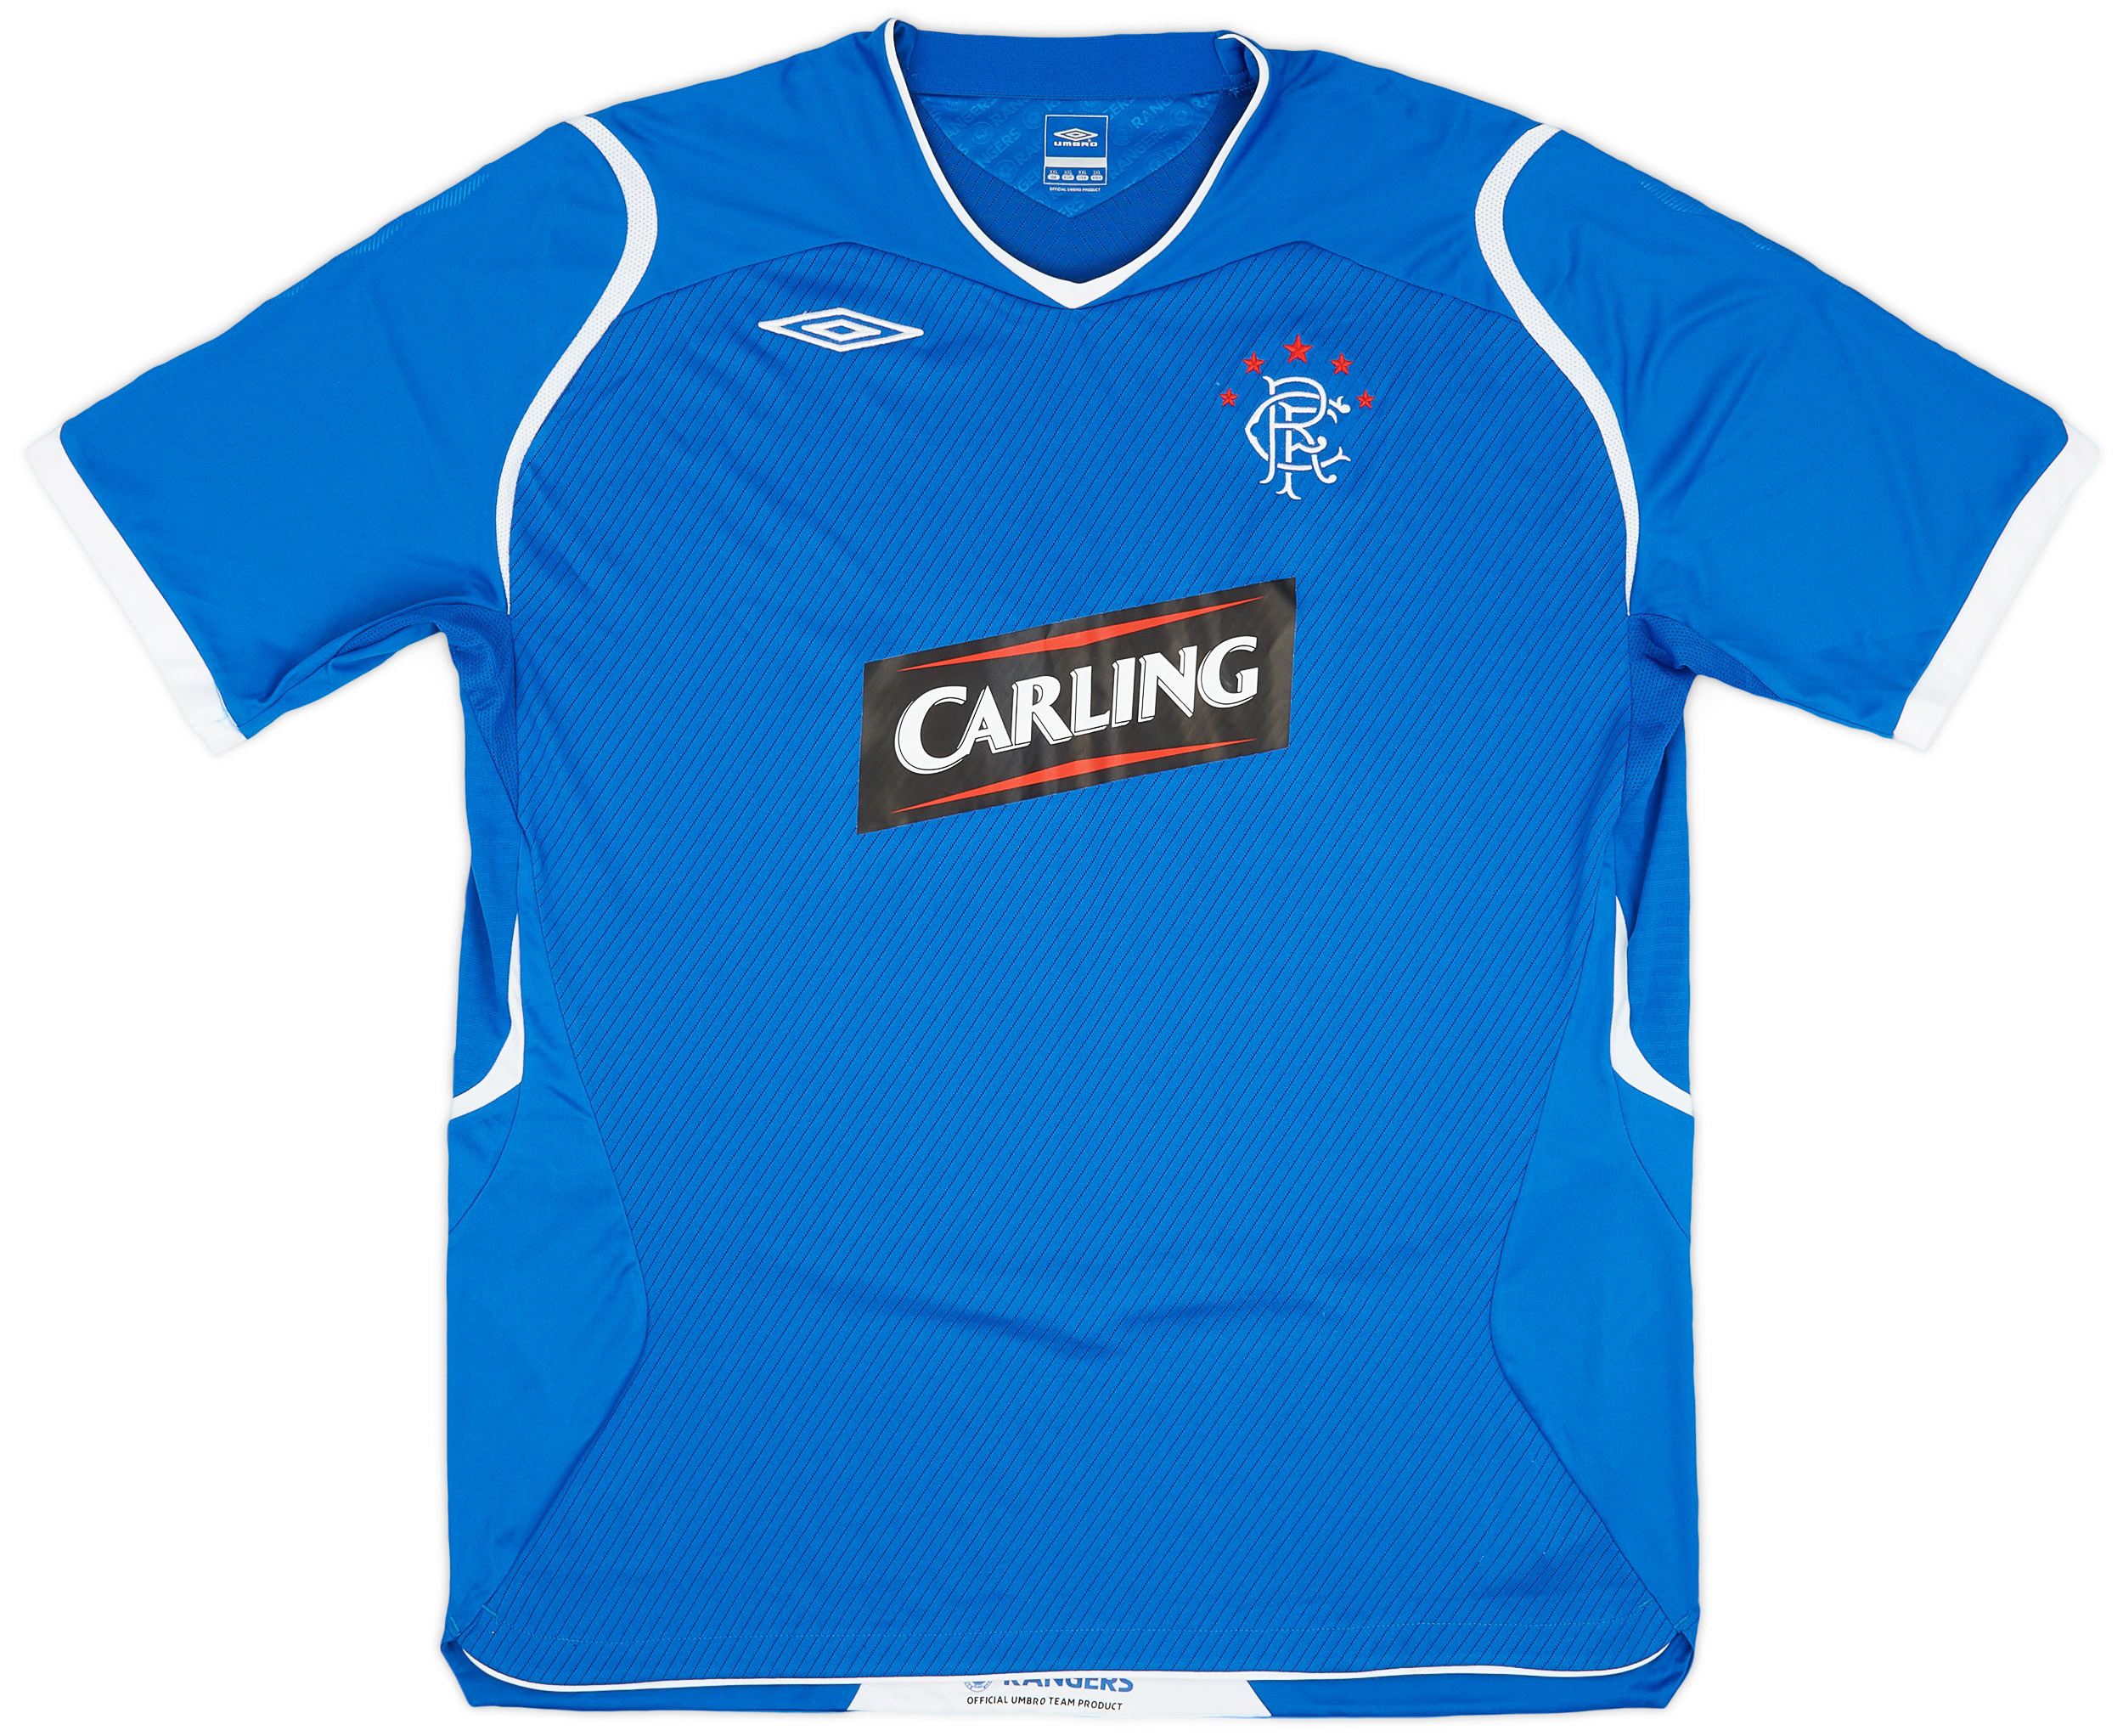 2008-09 Rangers Home Shirt - 9/10 - ()